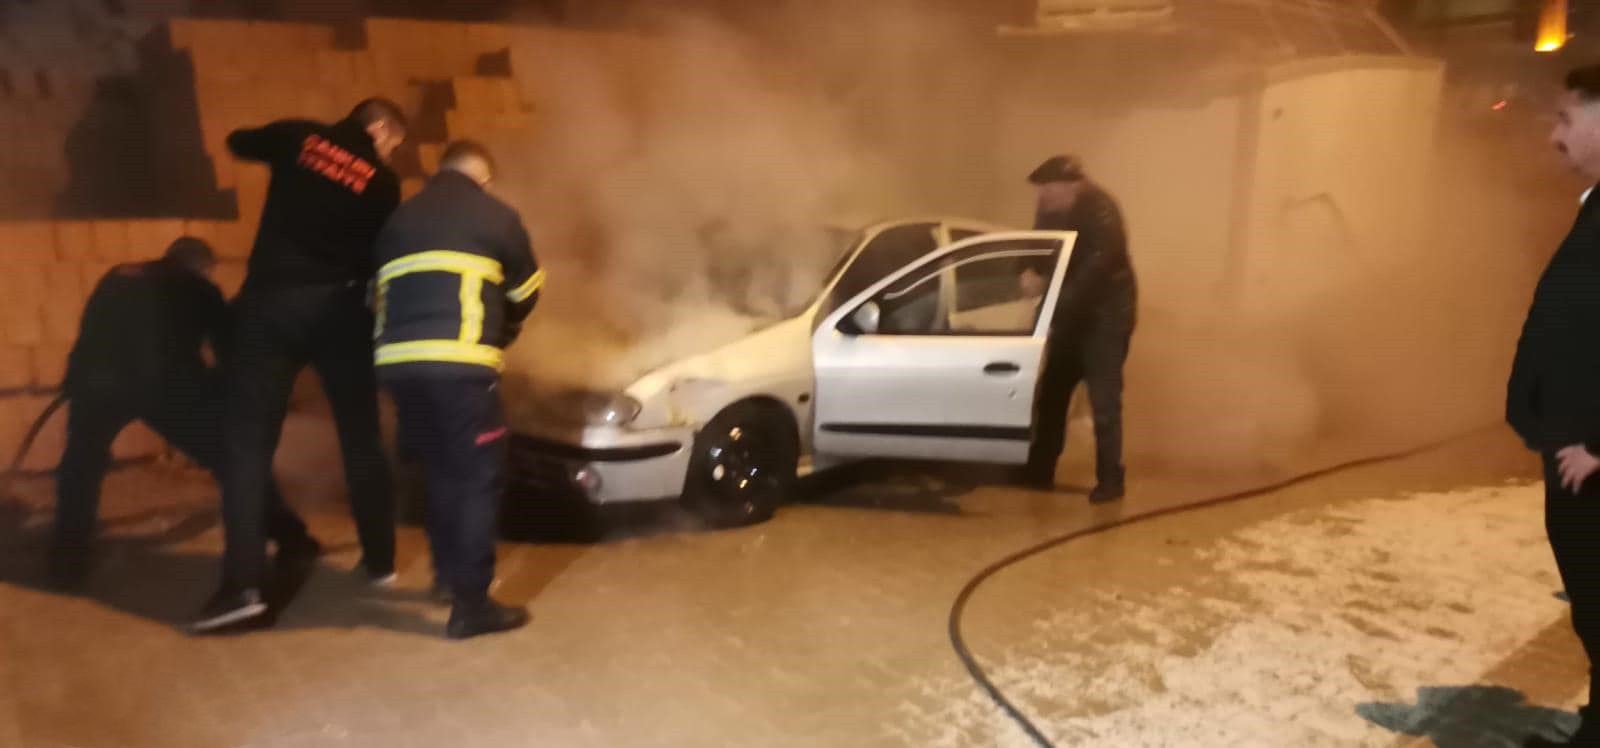 Otomobil yangına itfaiye müdahale etti